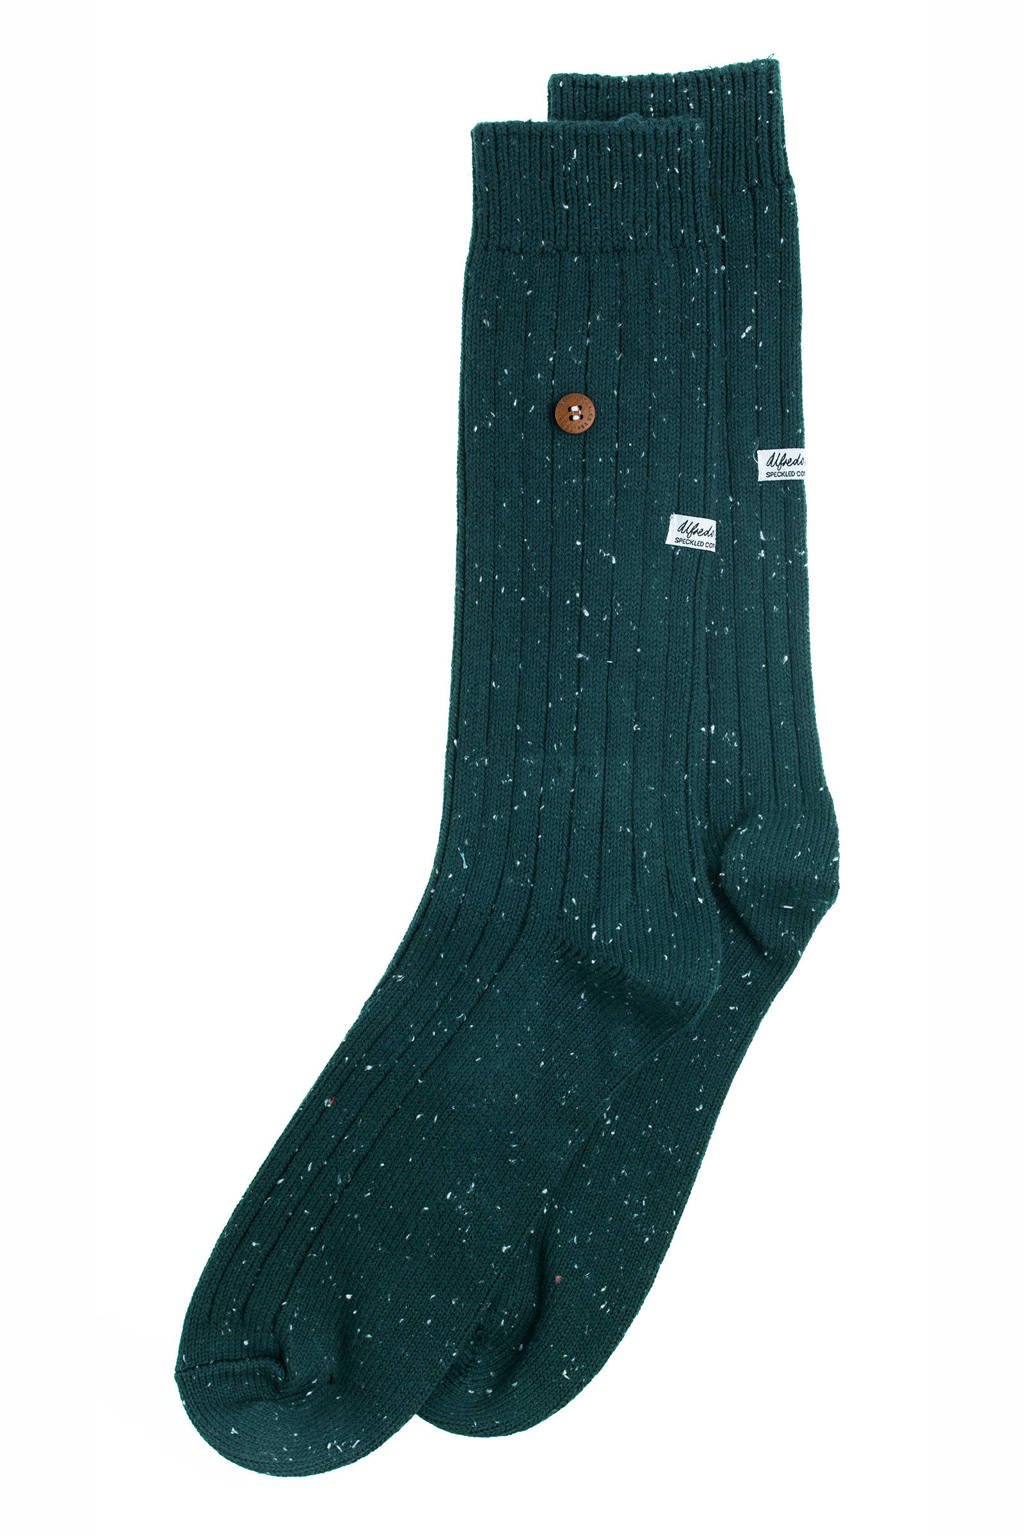 Alfredo Gonzales sokken Speckled Cotton donkergroen, Donkergroen